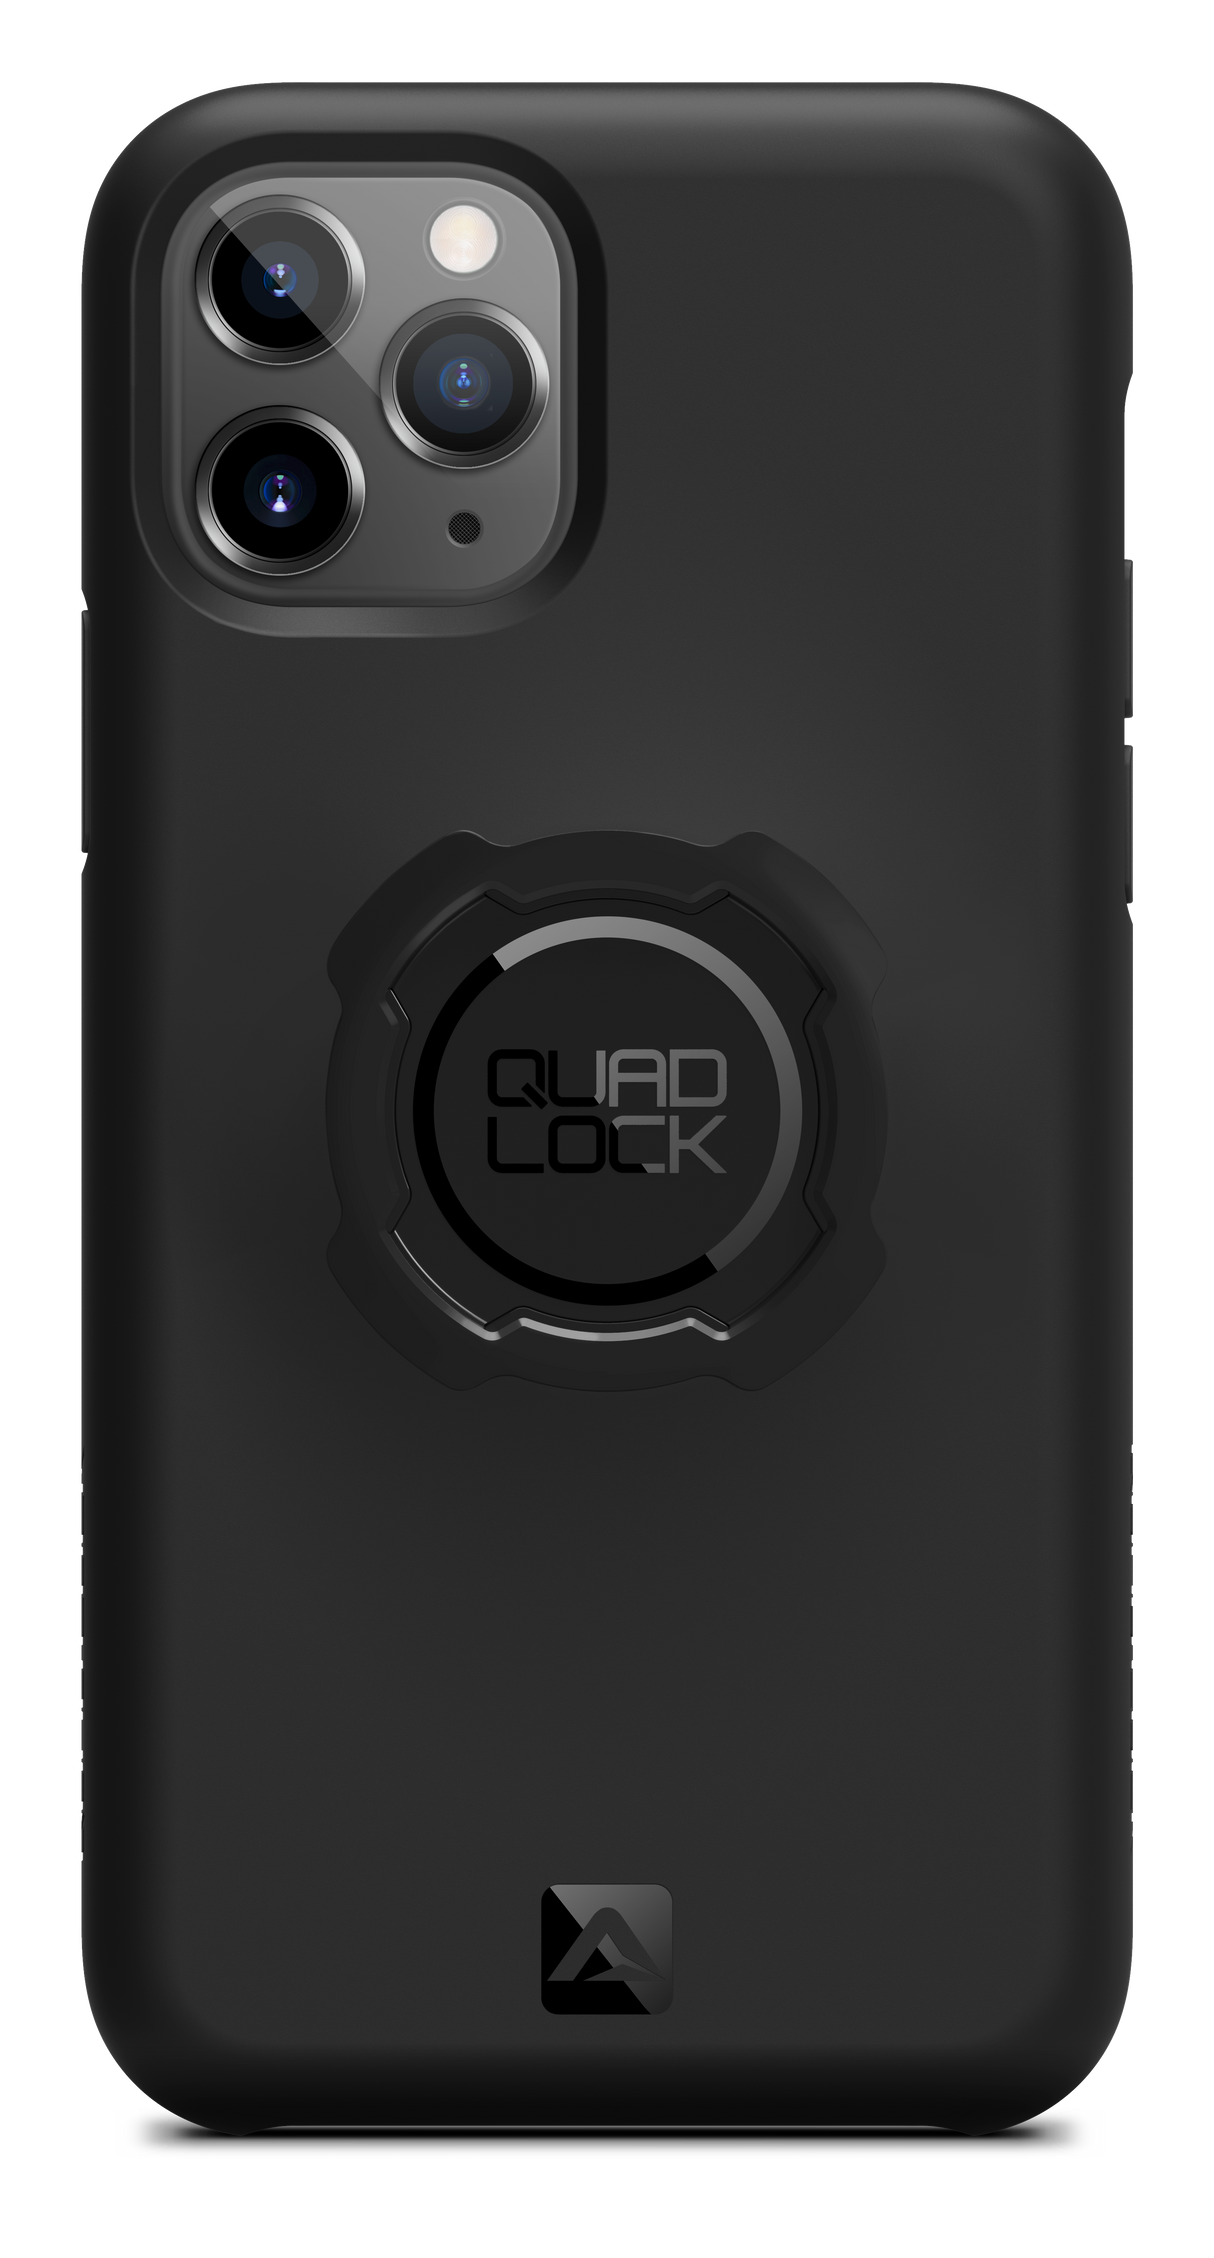 Quad Lock Original Case Iphone 11 Pro